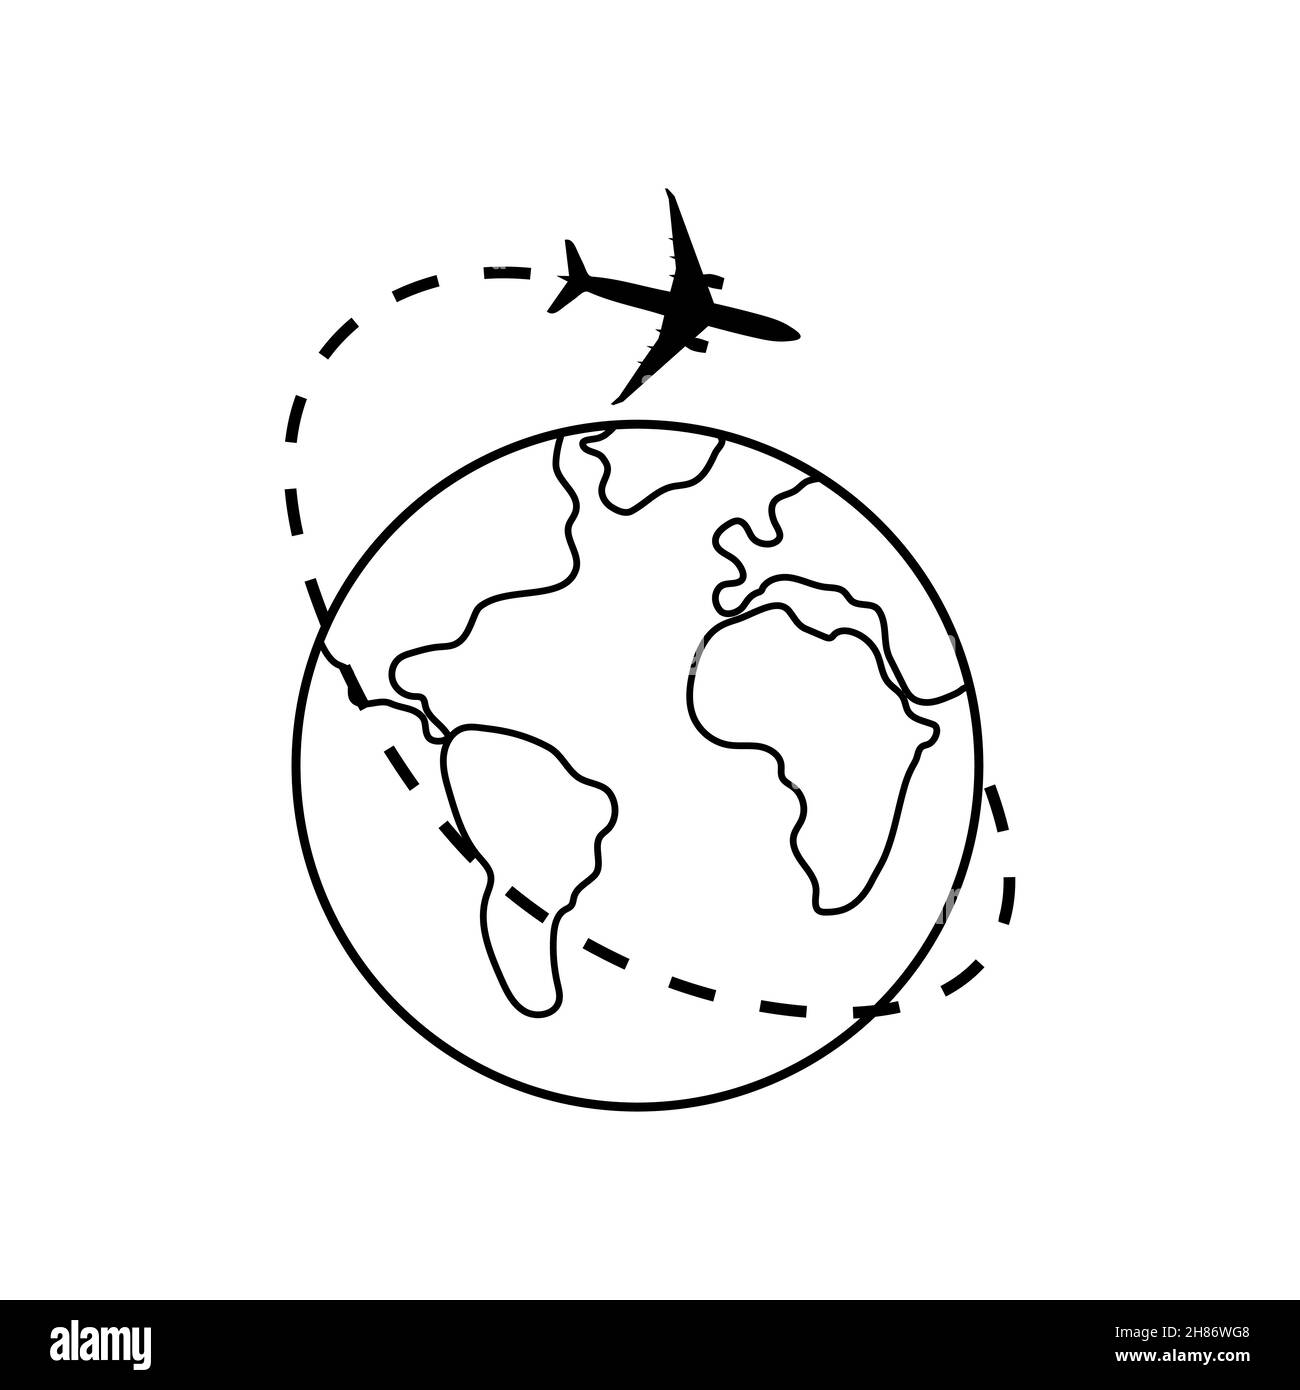 Gepunktete Linie der Flugstrecke um den Planeten Erde. Tourismus und Reisen. Vektorgrafik. Stock Vektor